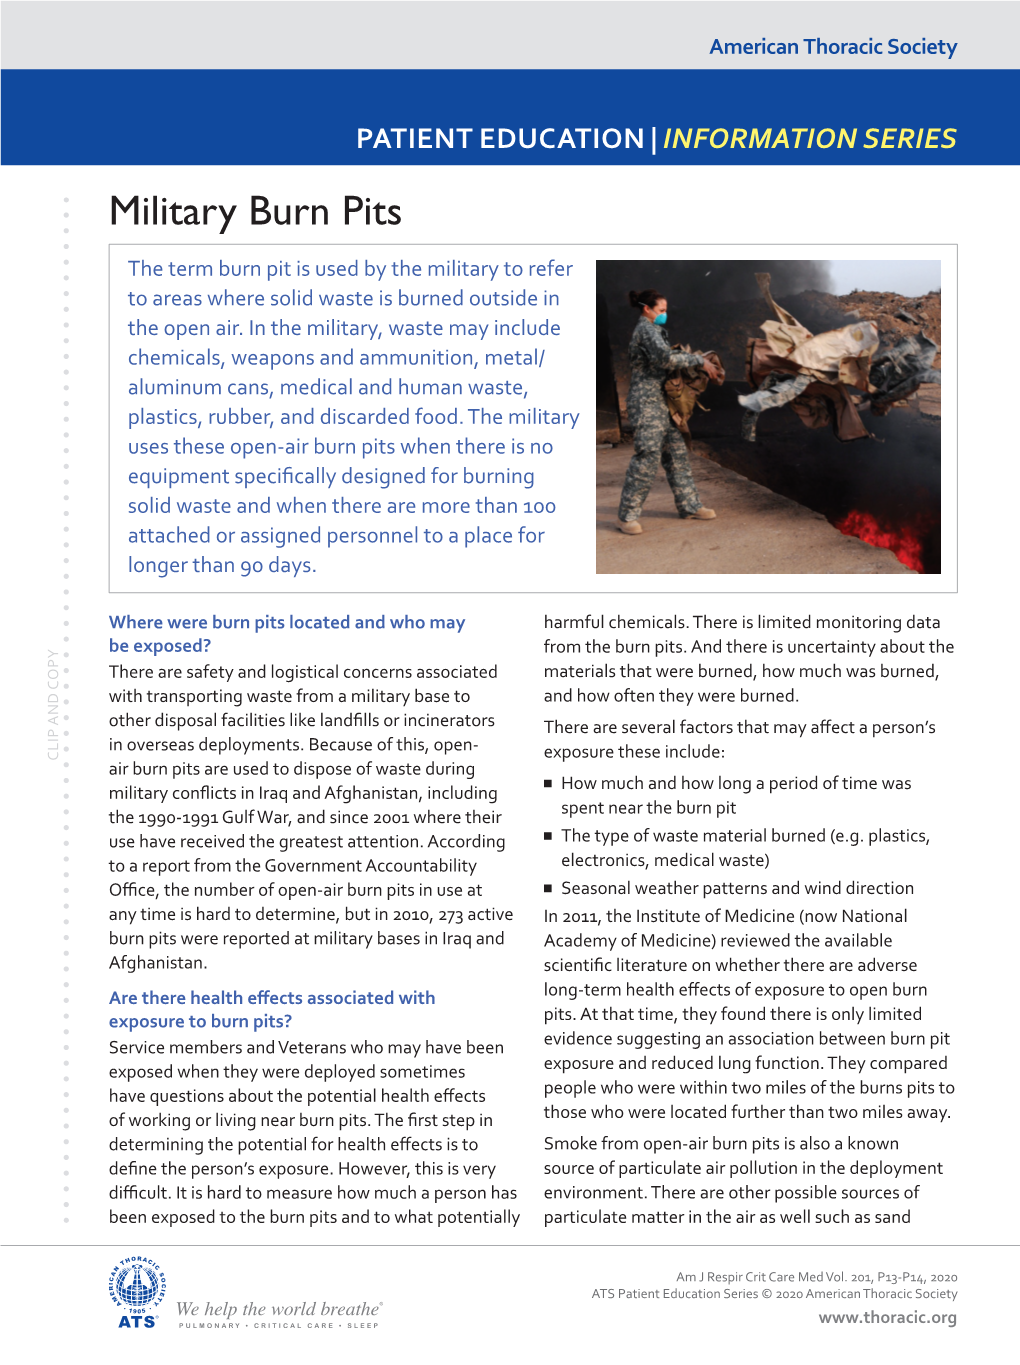 Military Burn Pits